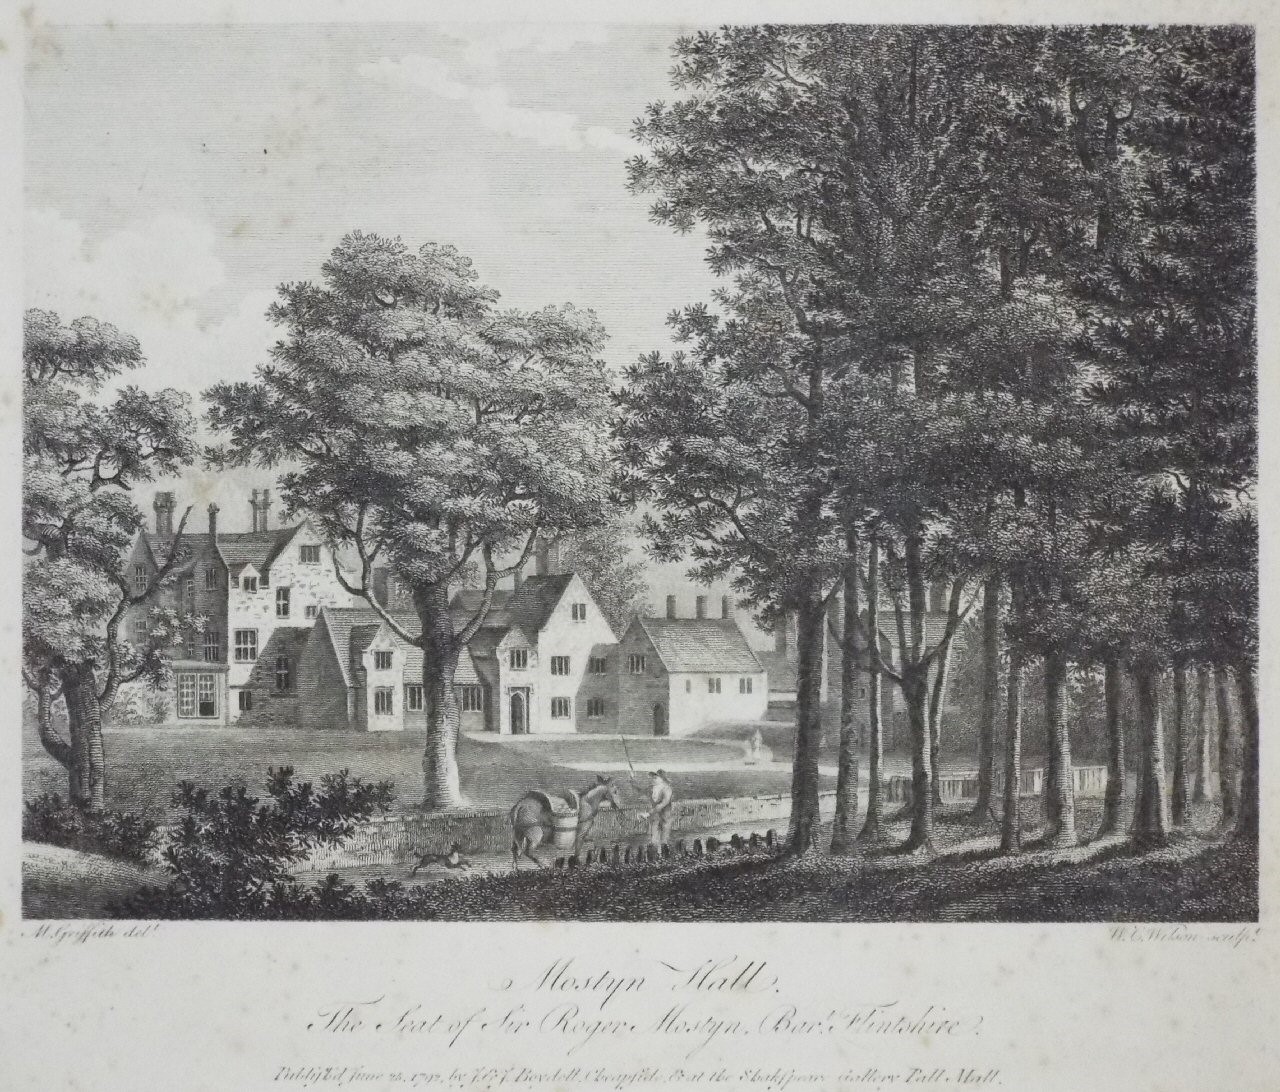 Print - Mostyn Hall, The Seat of Sir Roger Mostyn, Bart. Flintshire. - Wilson